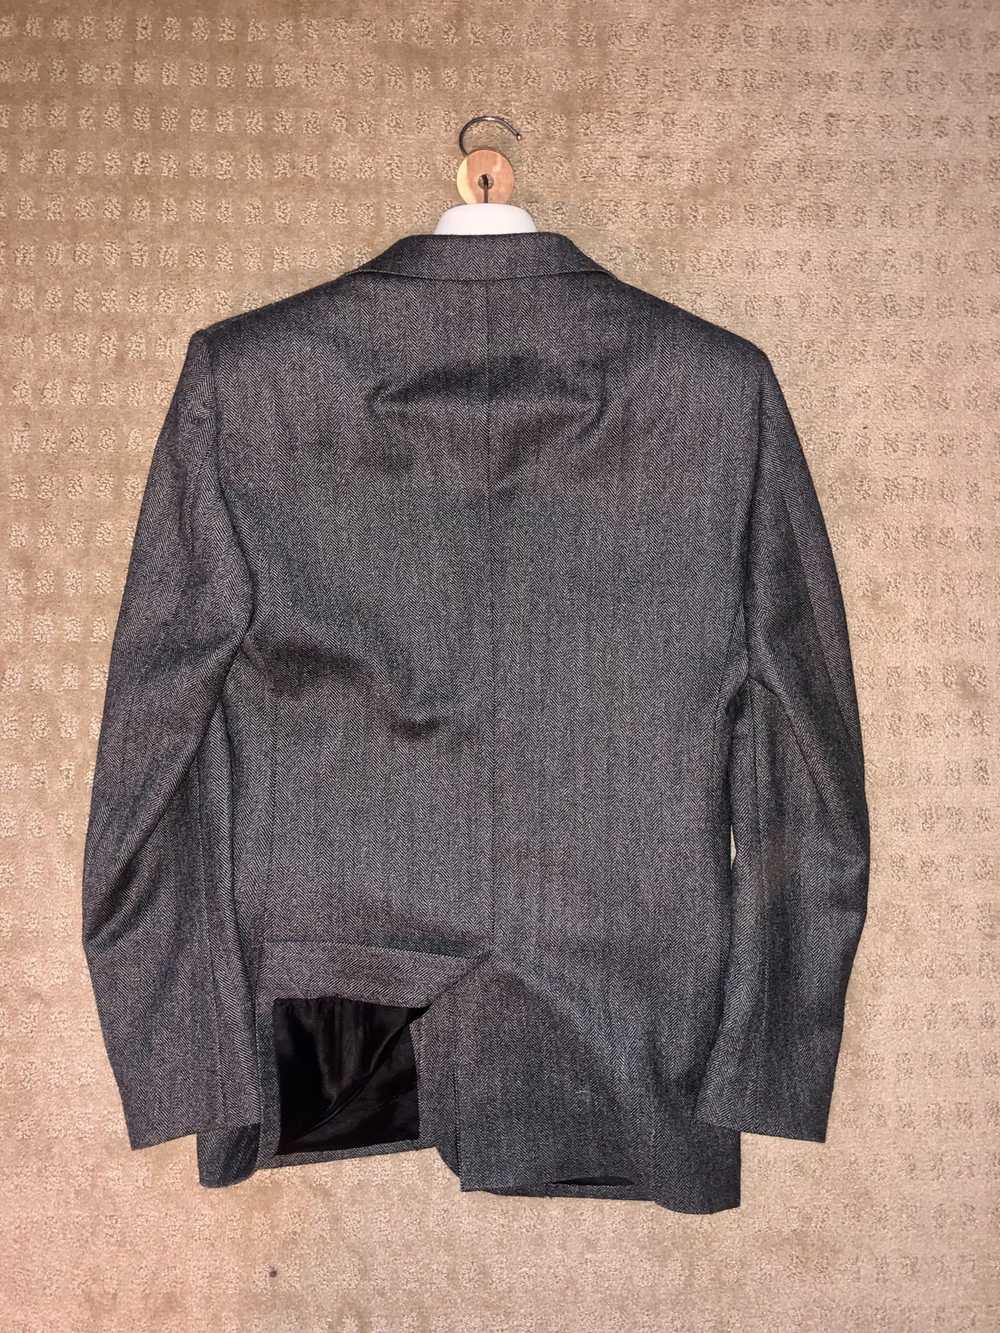 Stella McCartney Suit Jacket - image 7